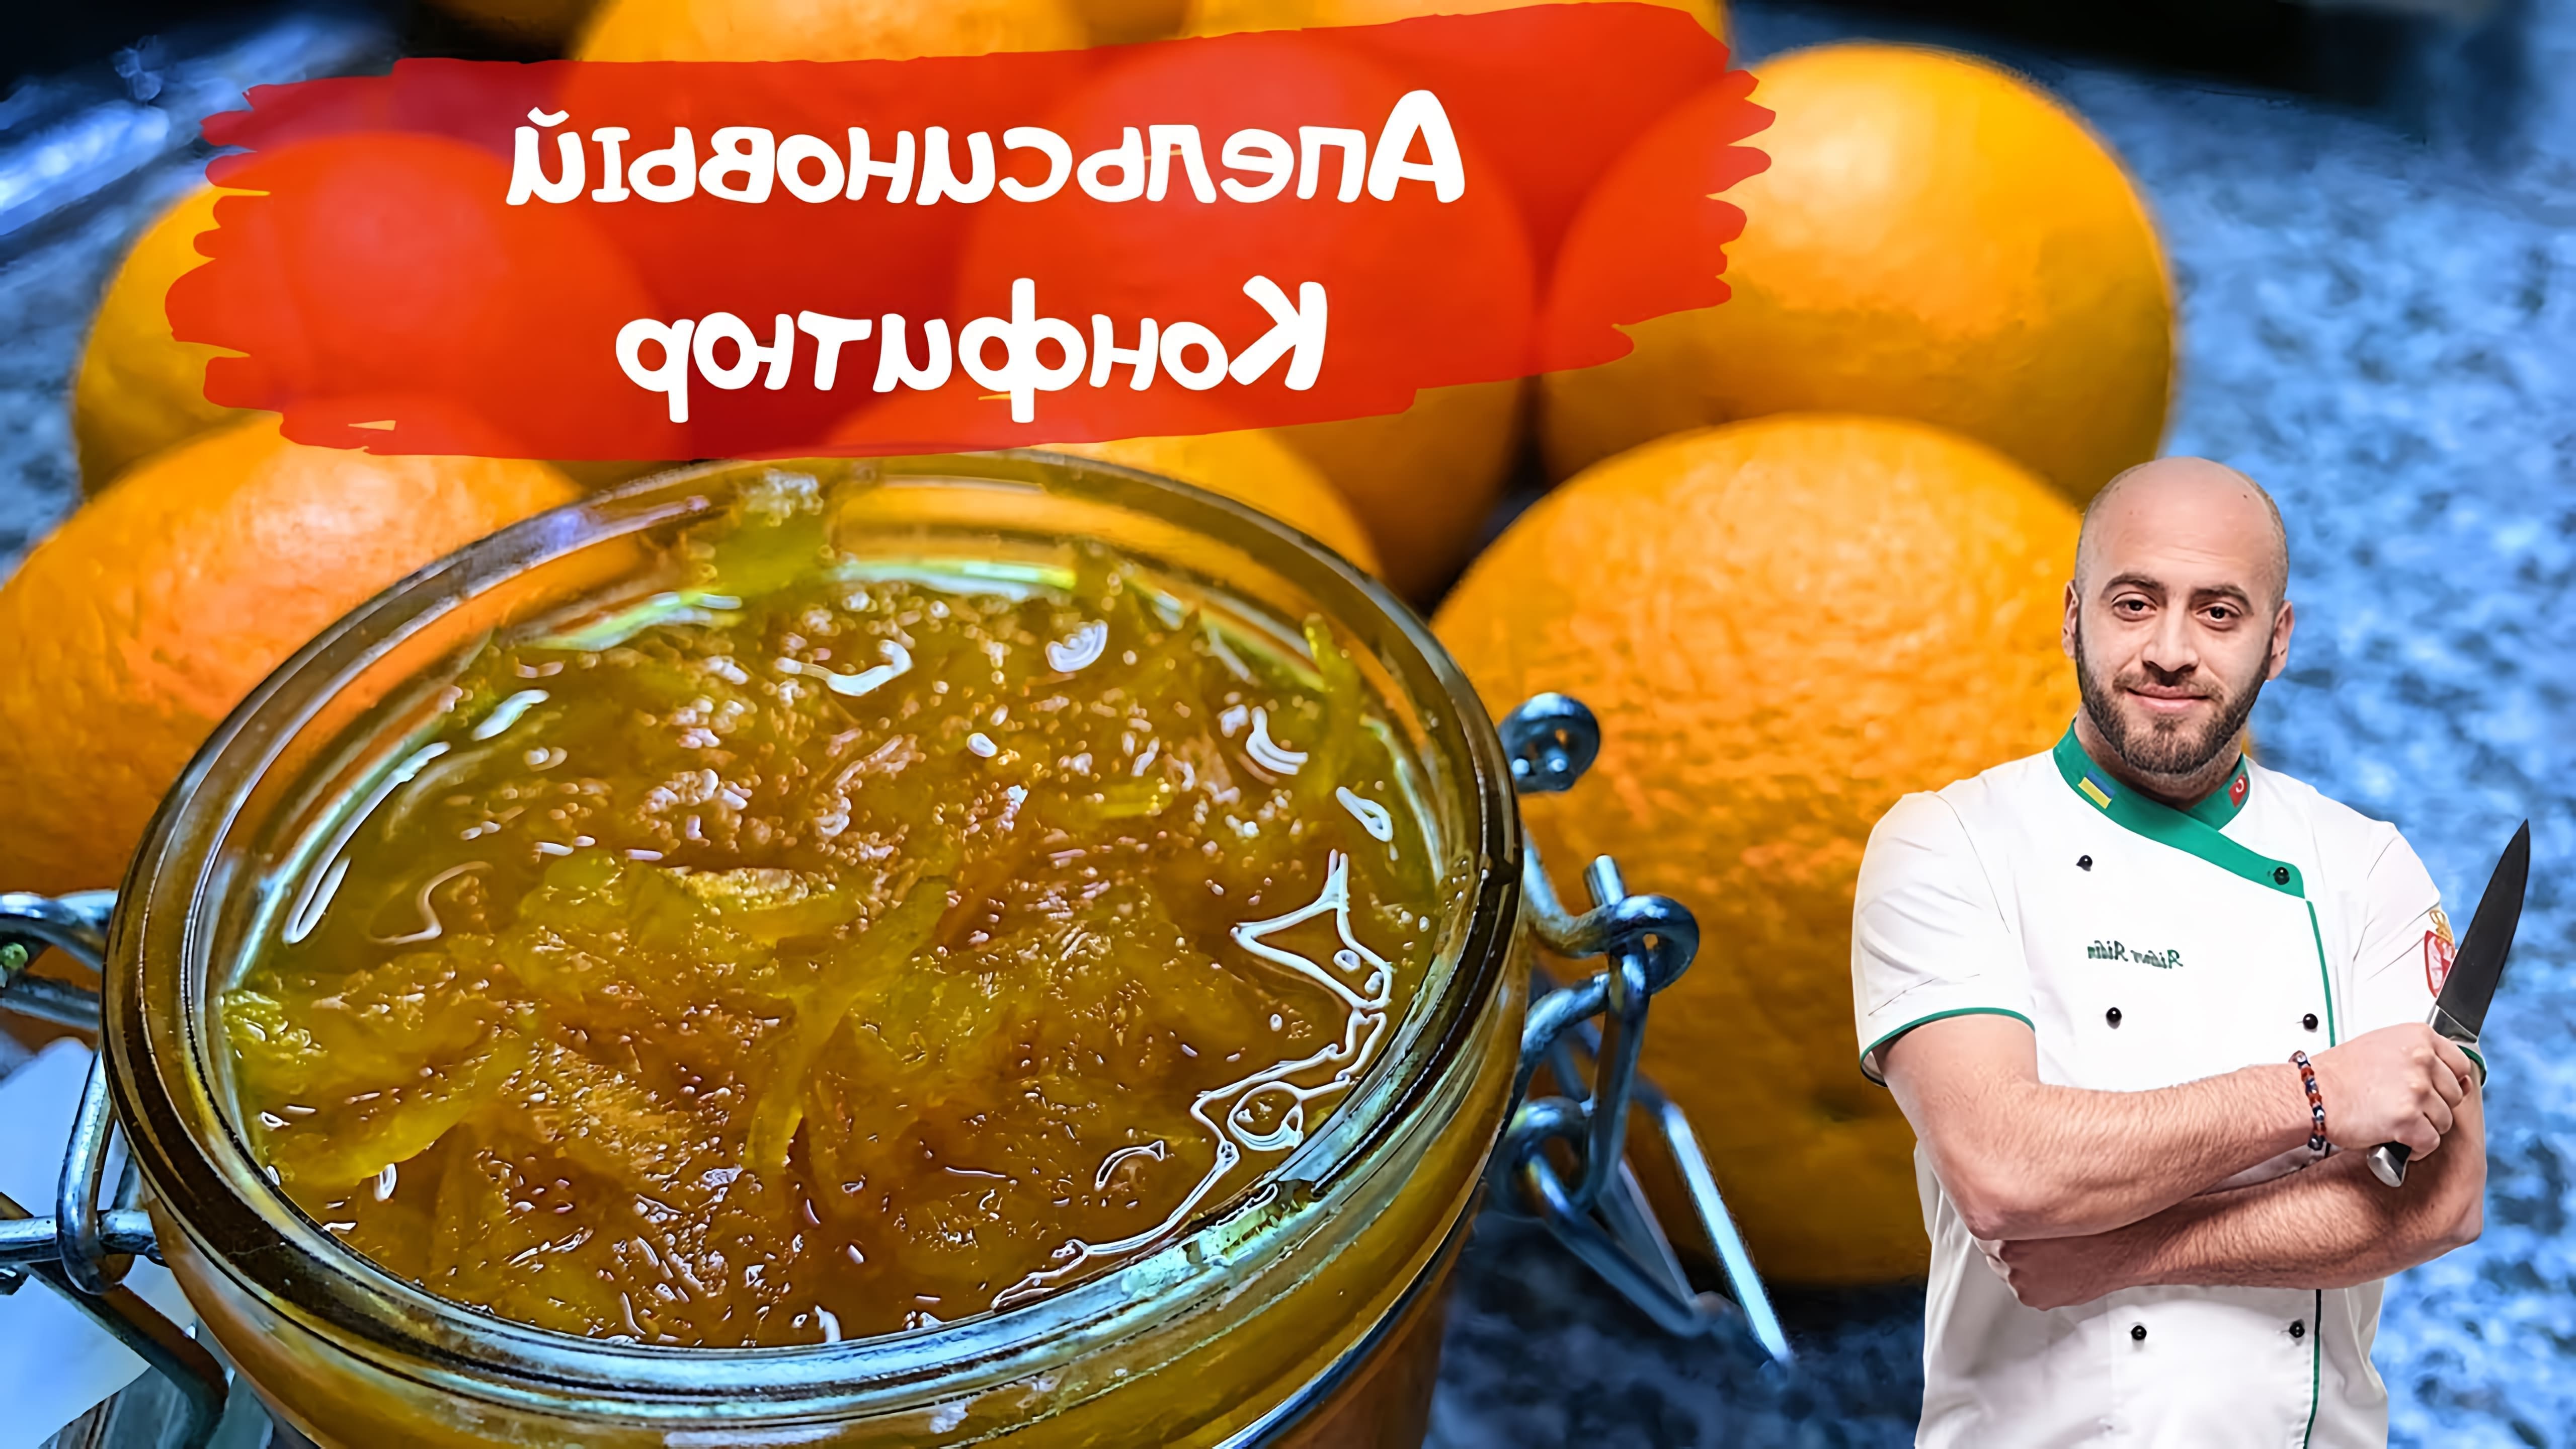 В этом видео демонстрируется процесс приготовления апельсинового конфитюра с цедрой